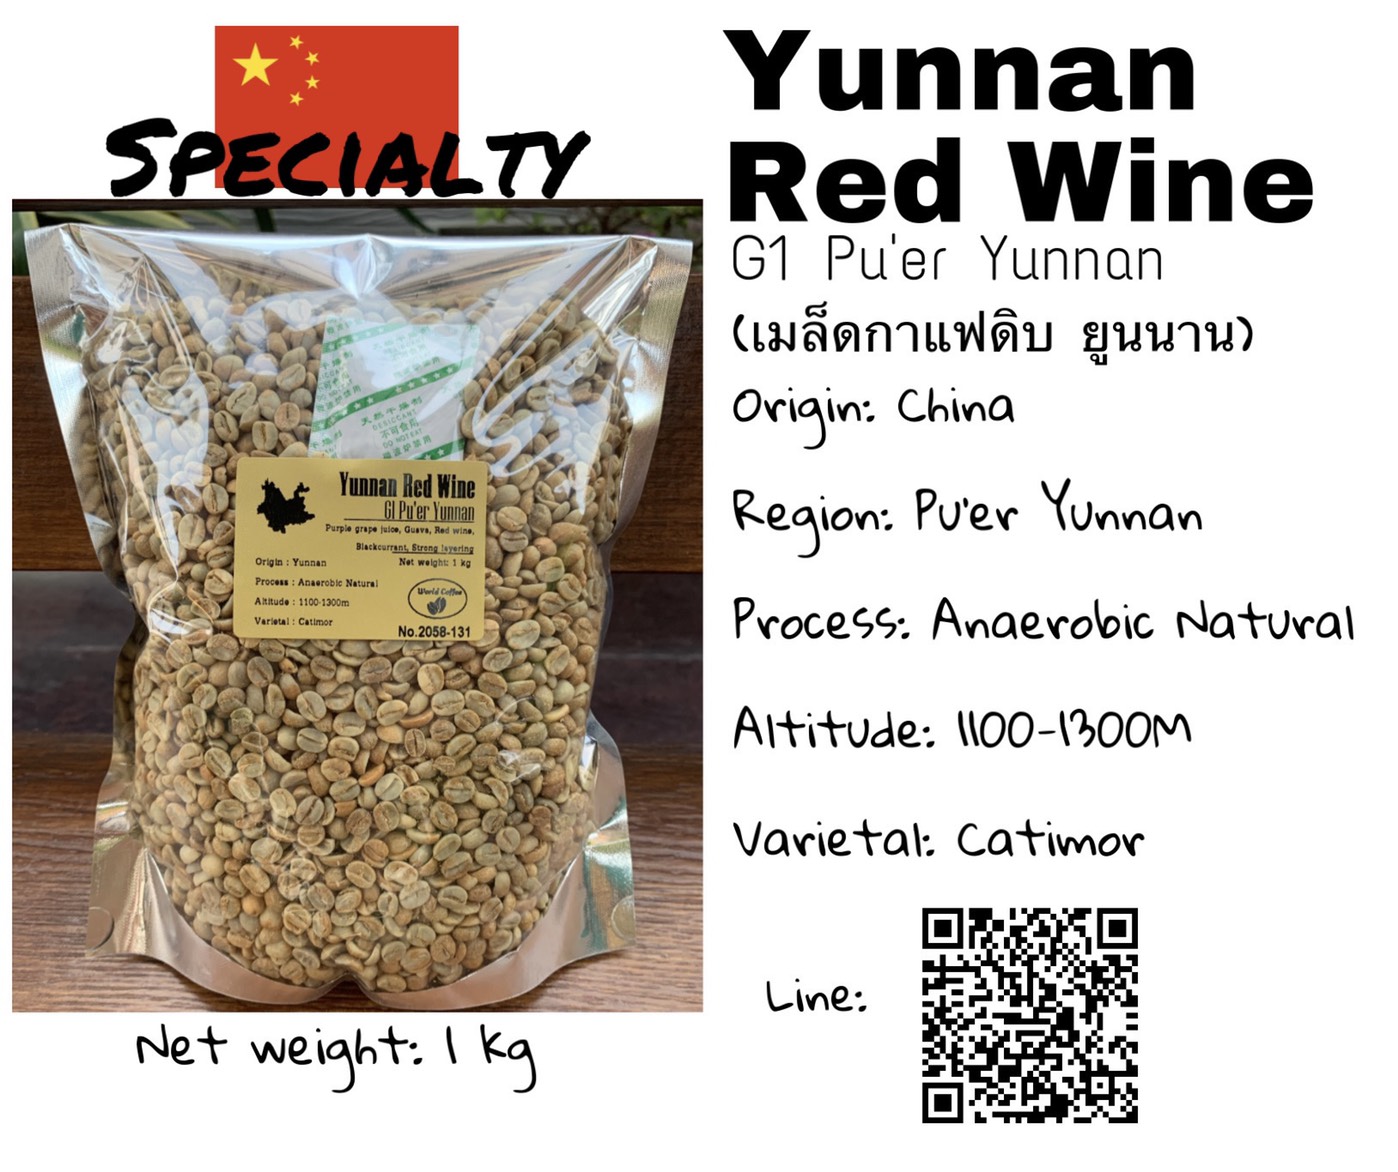 พร้อมส่ง เมล็ดกาแฟดิบ *Specialty* Yunnan Red Wine Pu’er Yunnan Anaerobic Natural process ขนาด 1kg. / เมล็ดกาแฟนอก/ เมล็ดกาแฟสารยูนนาน คัดโดยเฉพาะ และ ไม่คัด